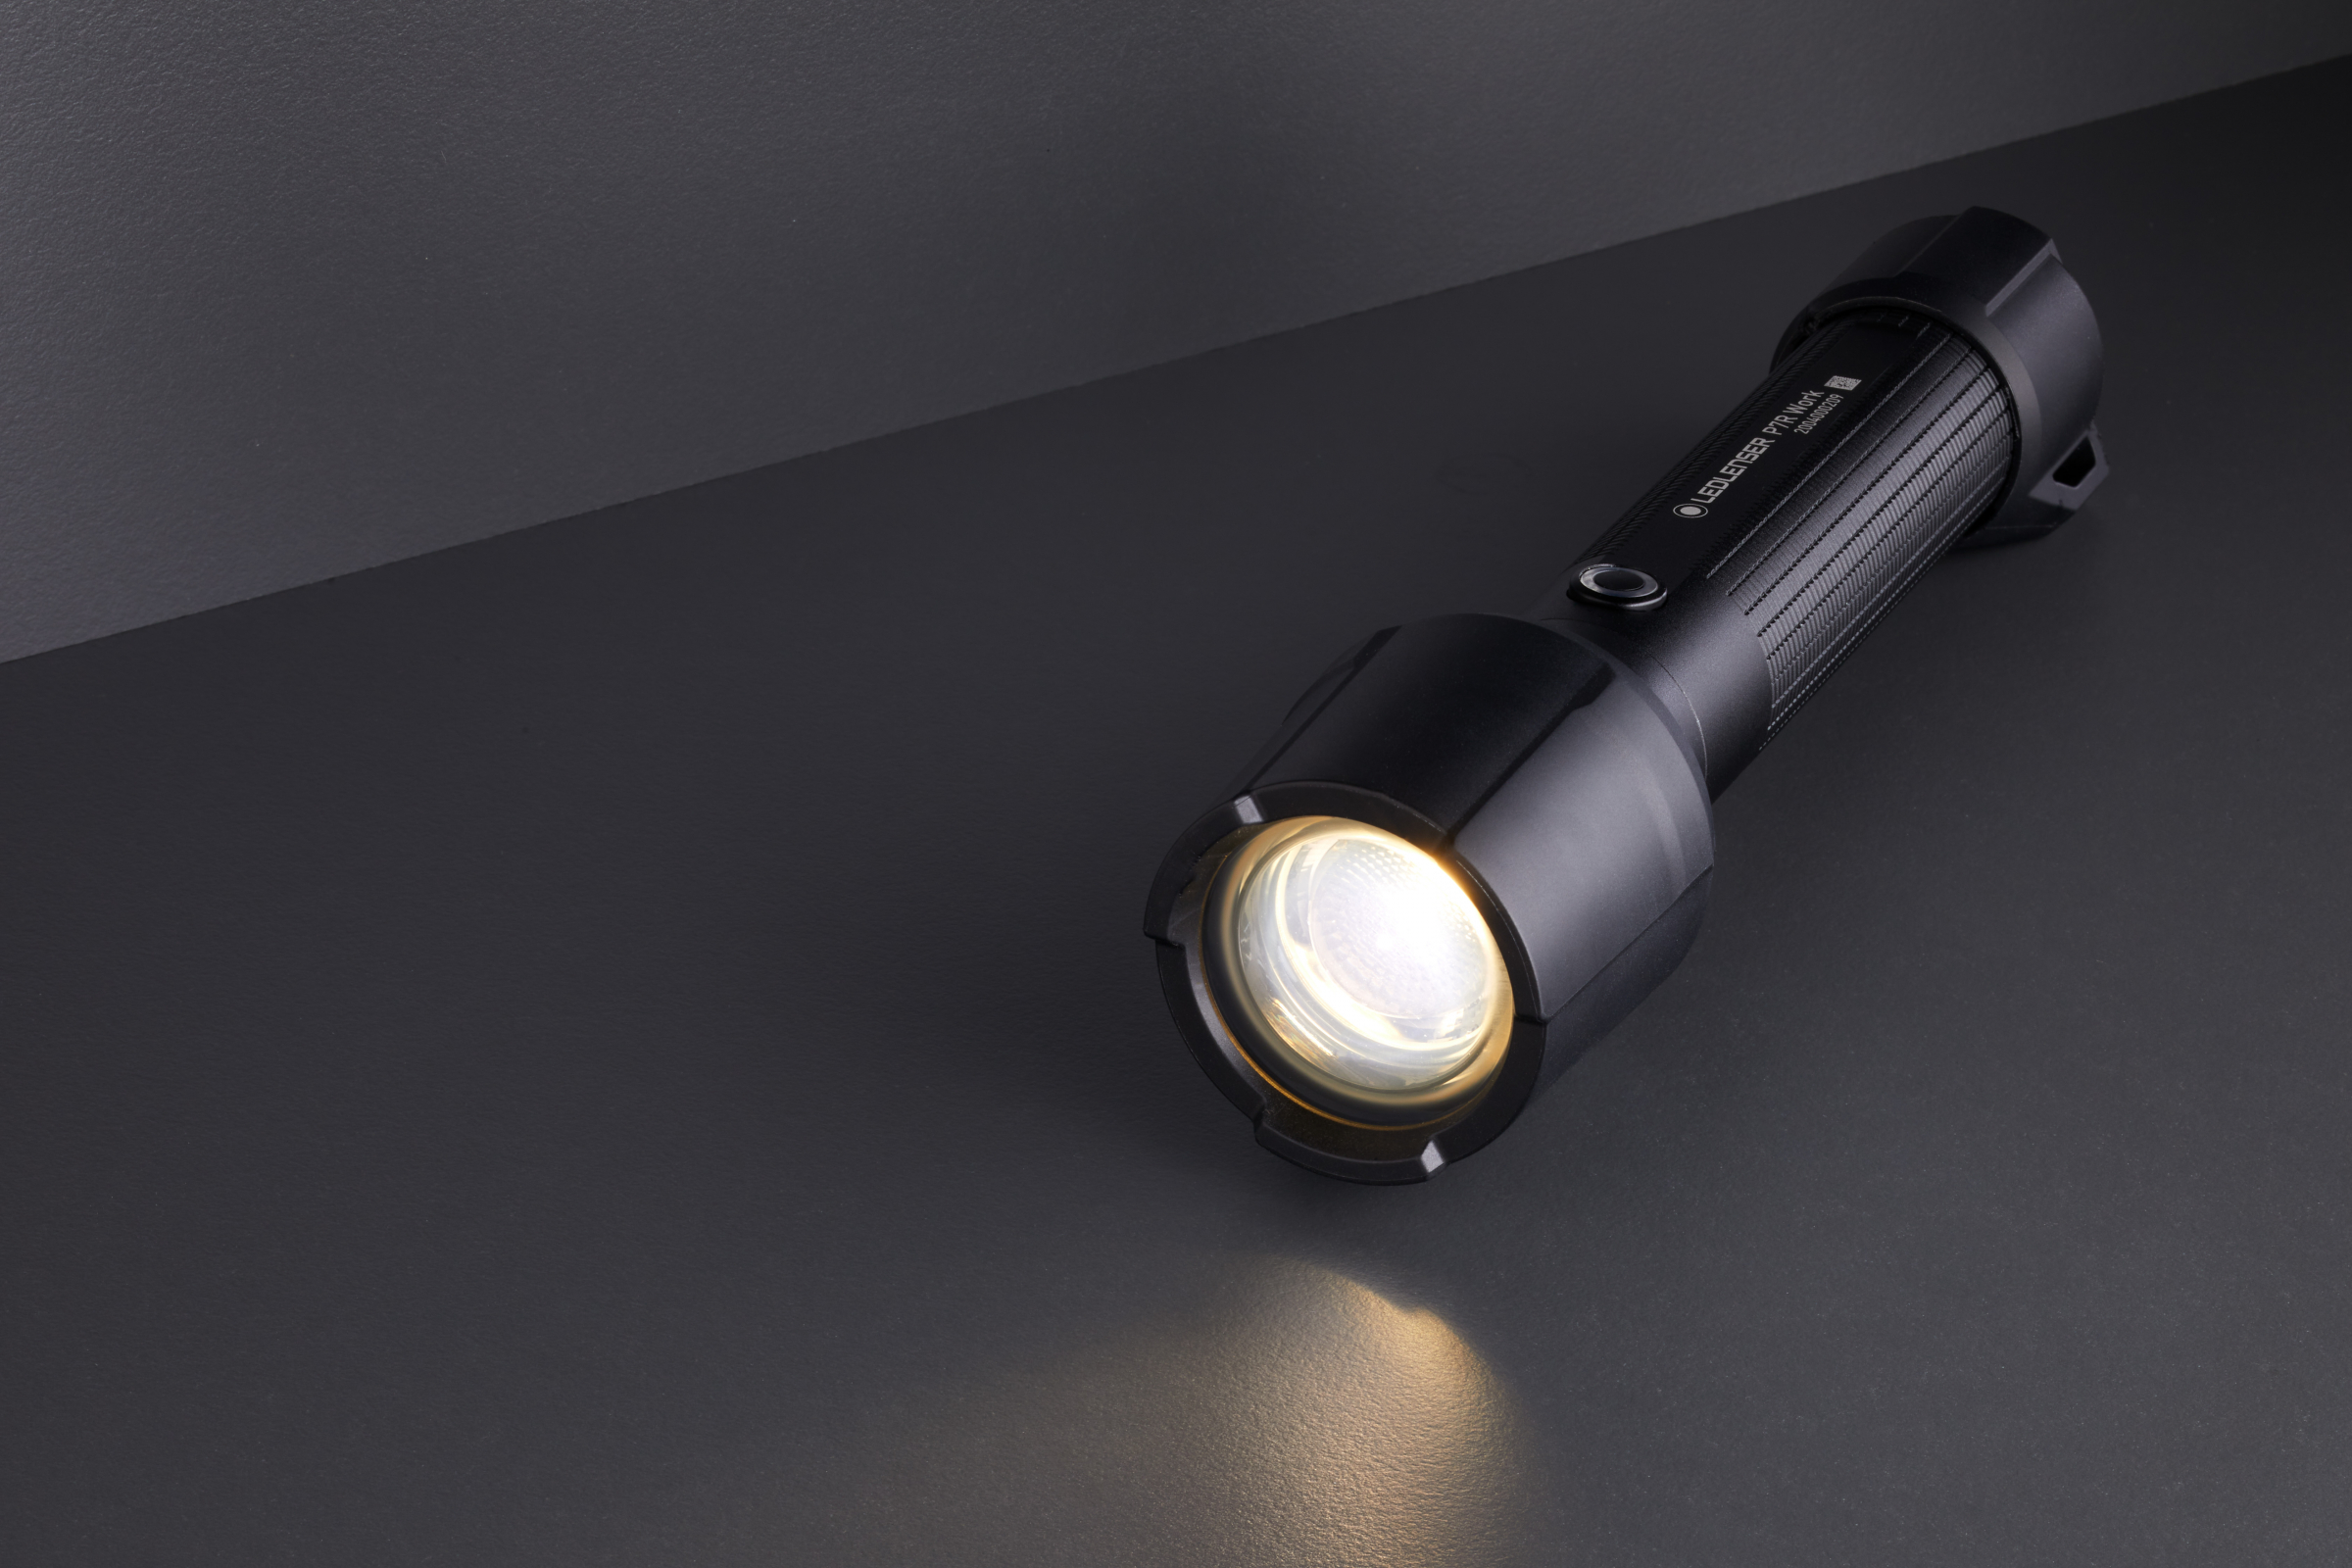 Led Lenser Flashlight P7R Work incl. Li-ion battery